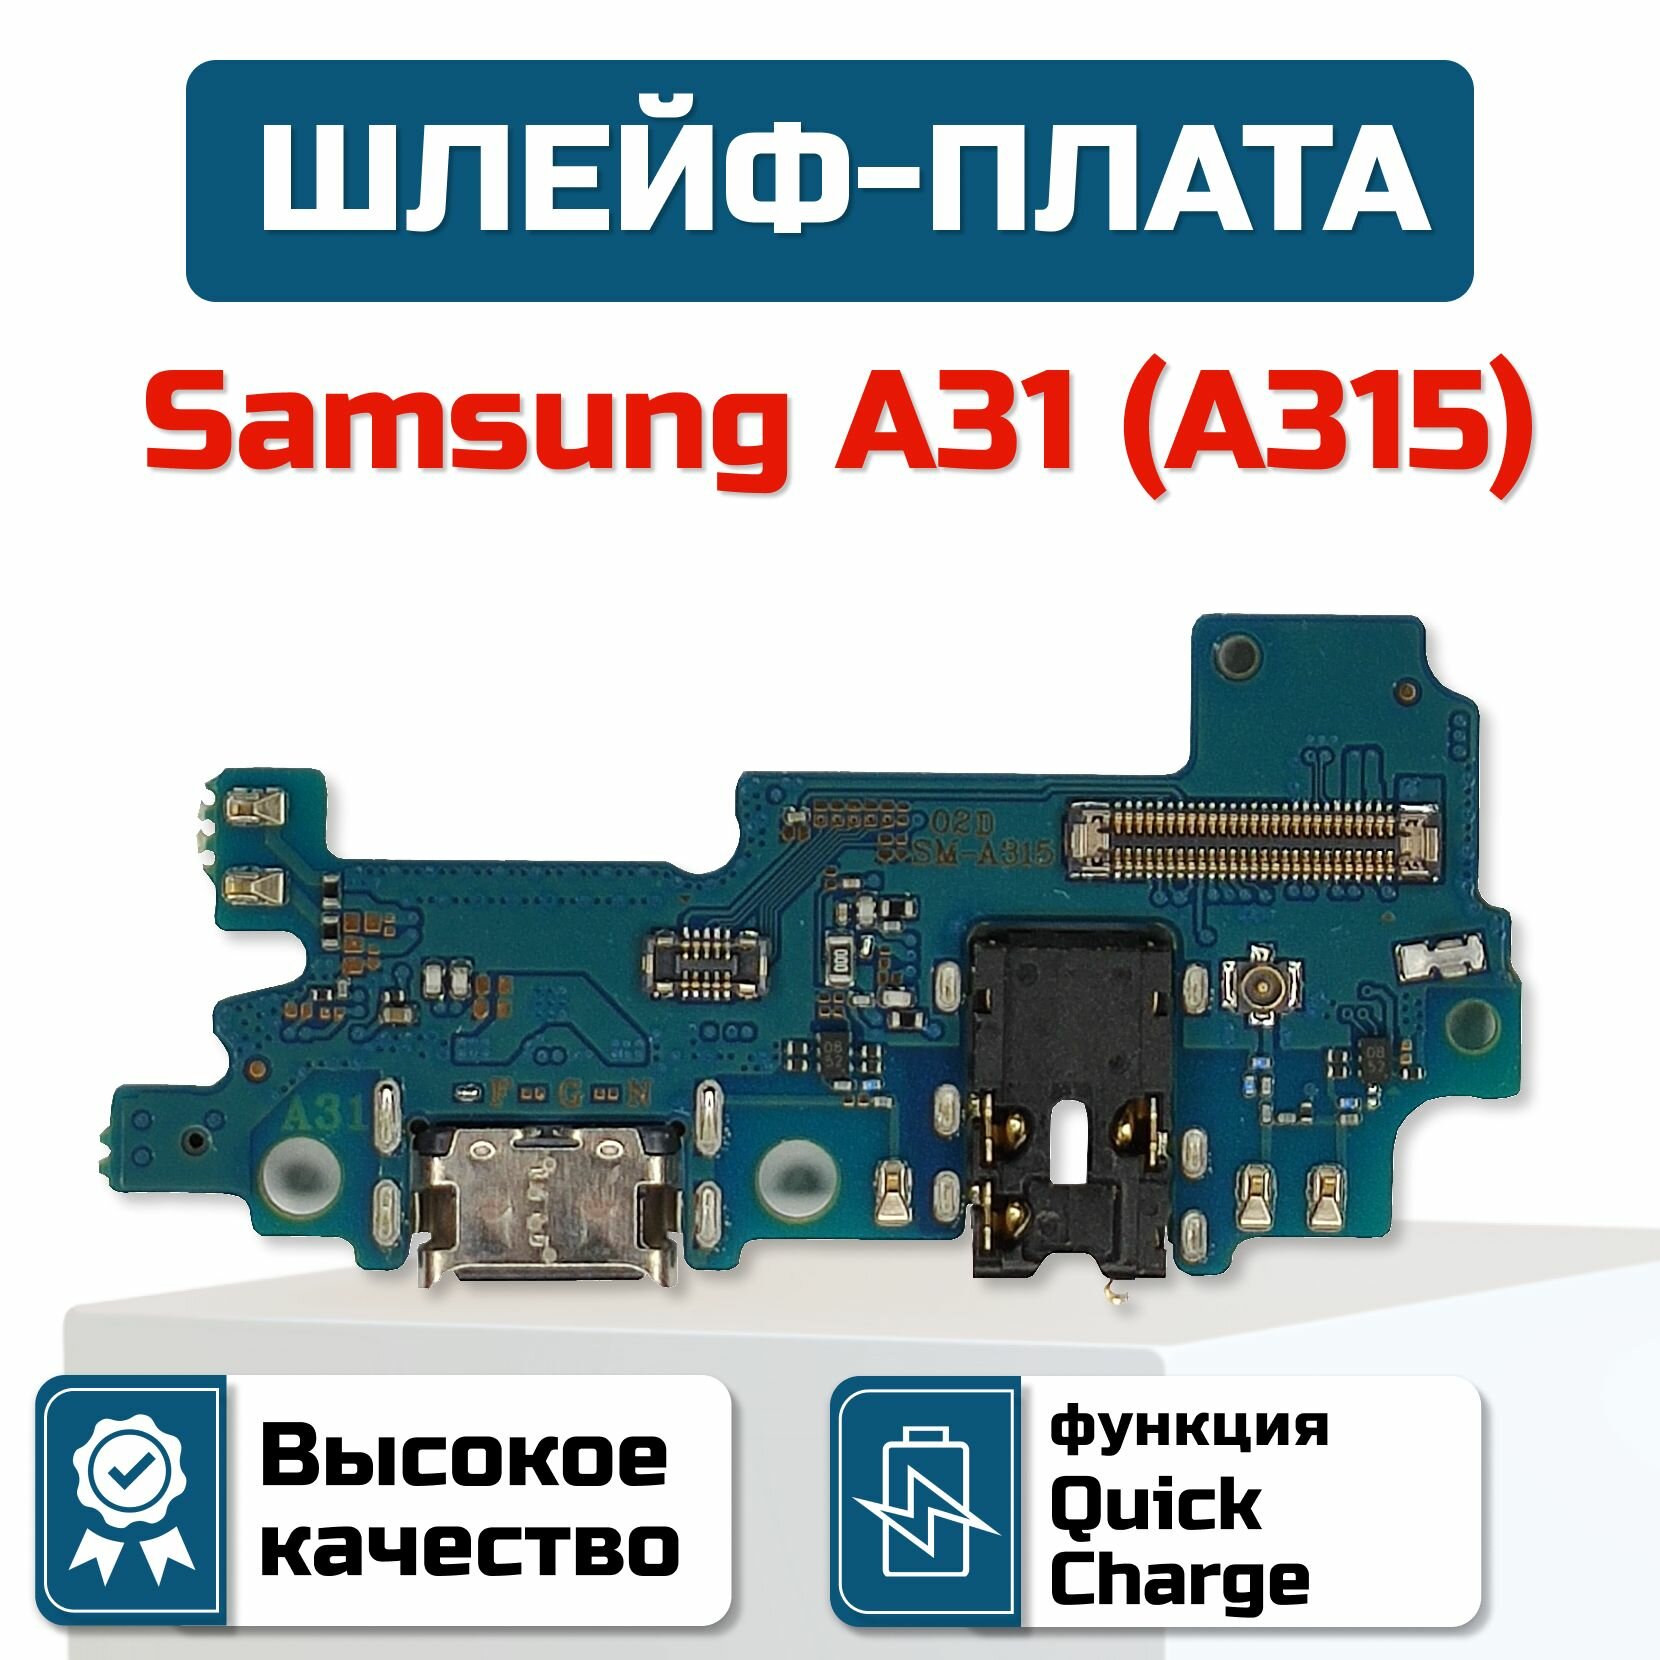 Шлейф-плата для Samsung Galaxy A31 (A315)